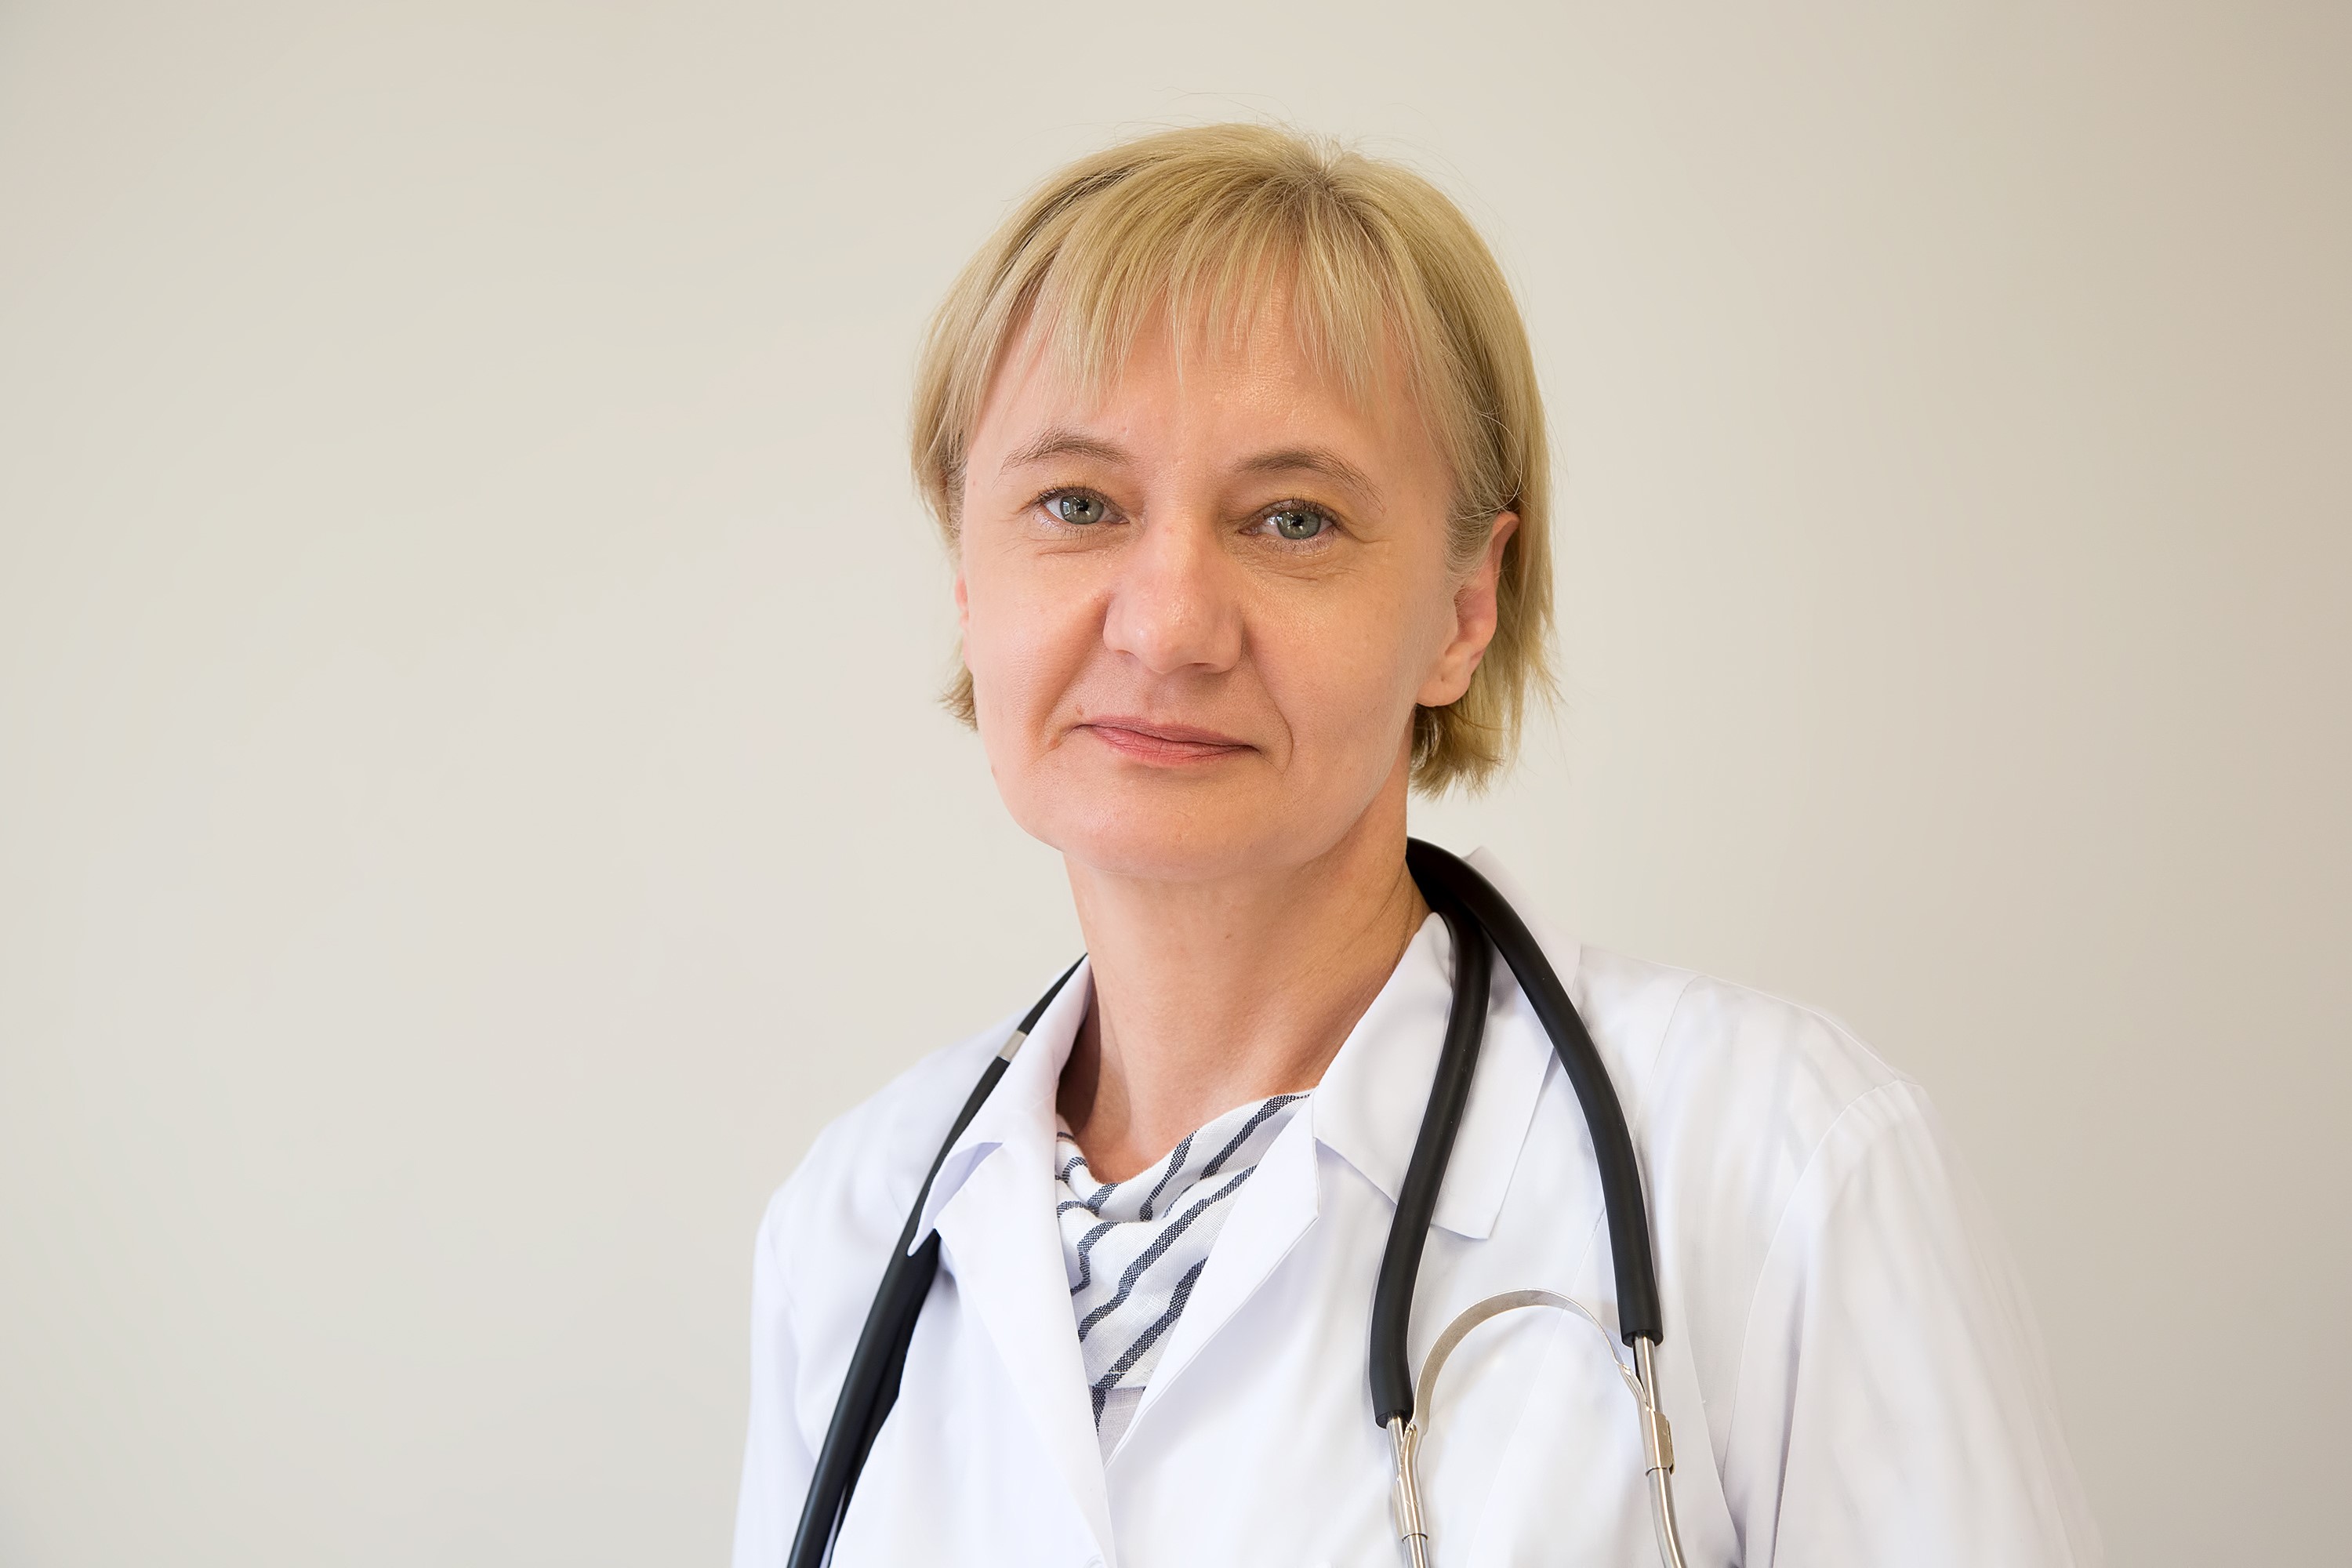 Prof. Malakhova Zhanna